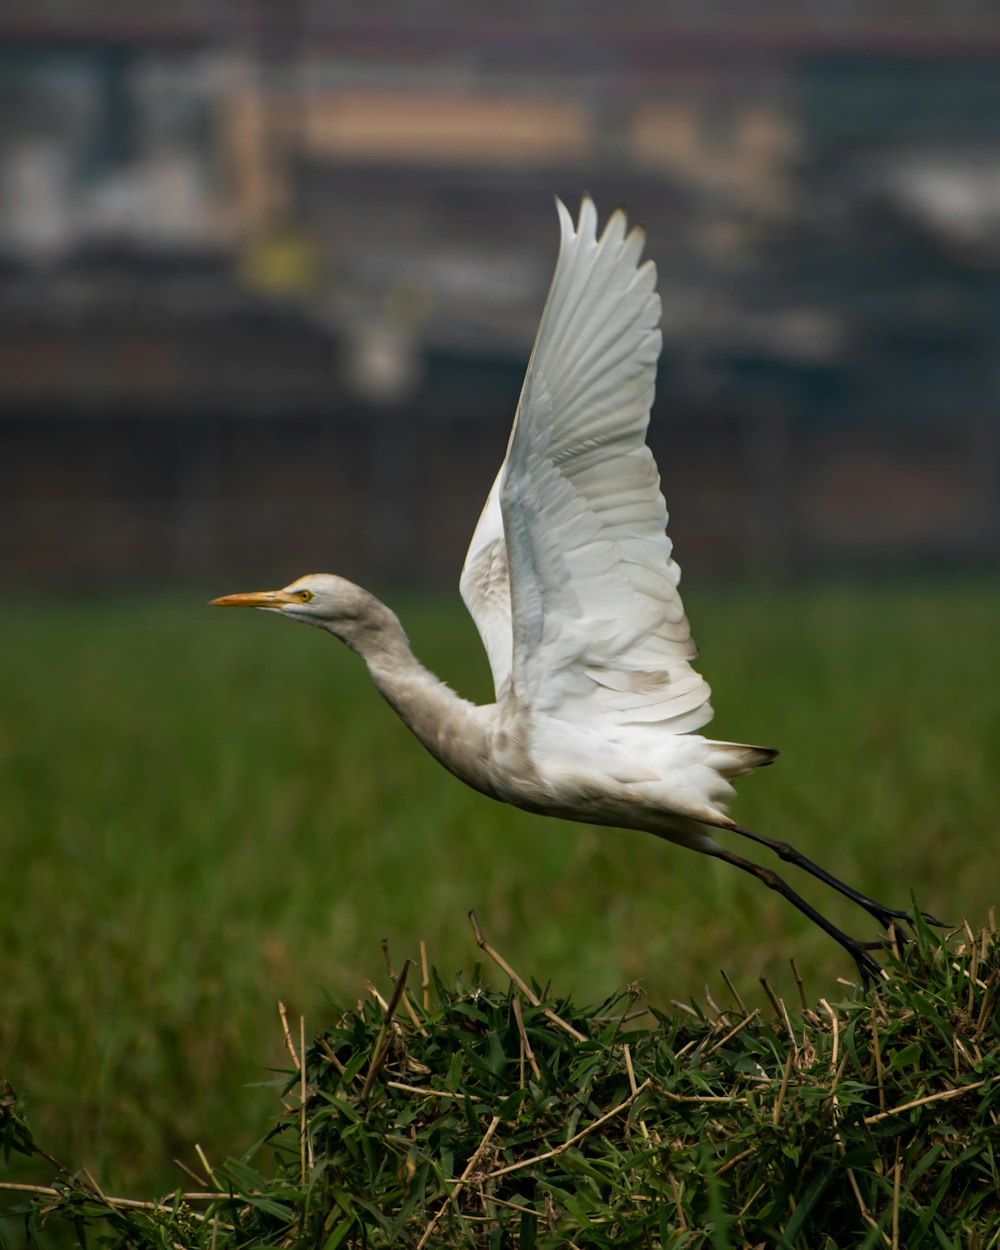 white bird flying over green grass during daytime